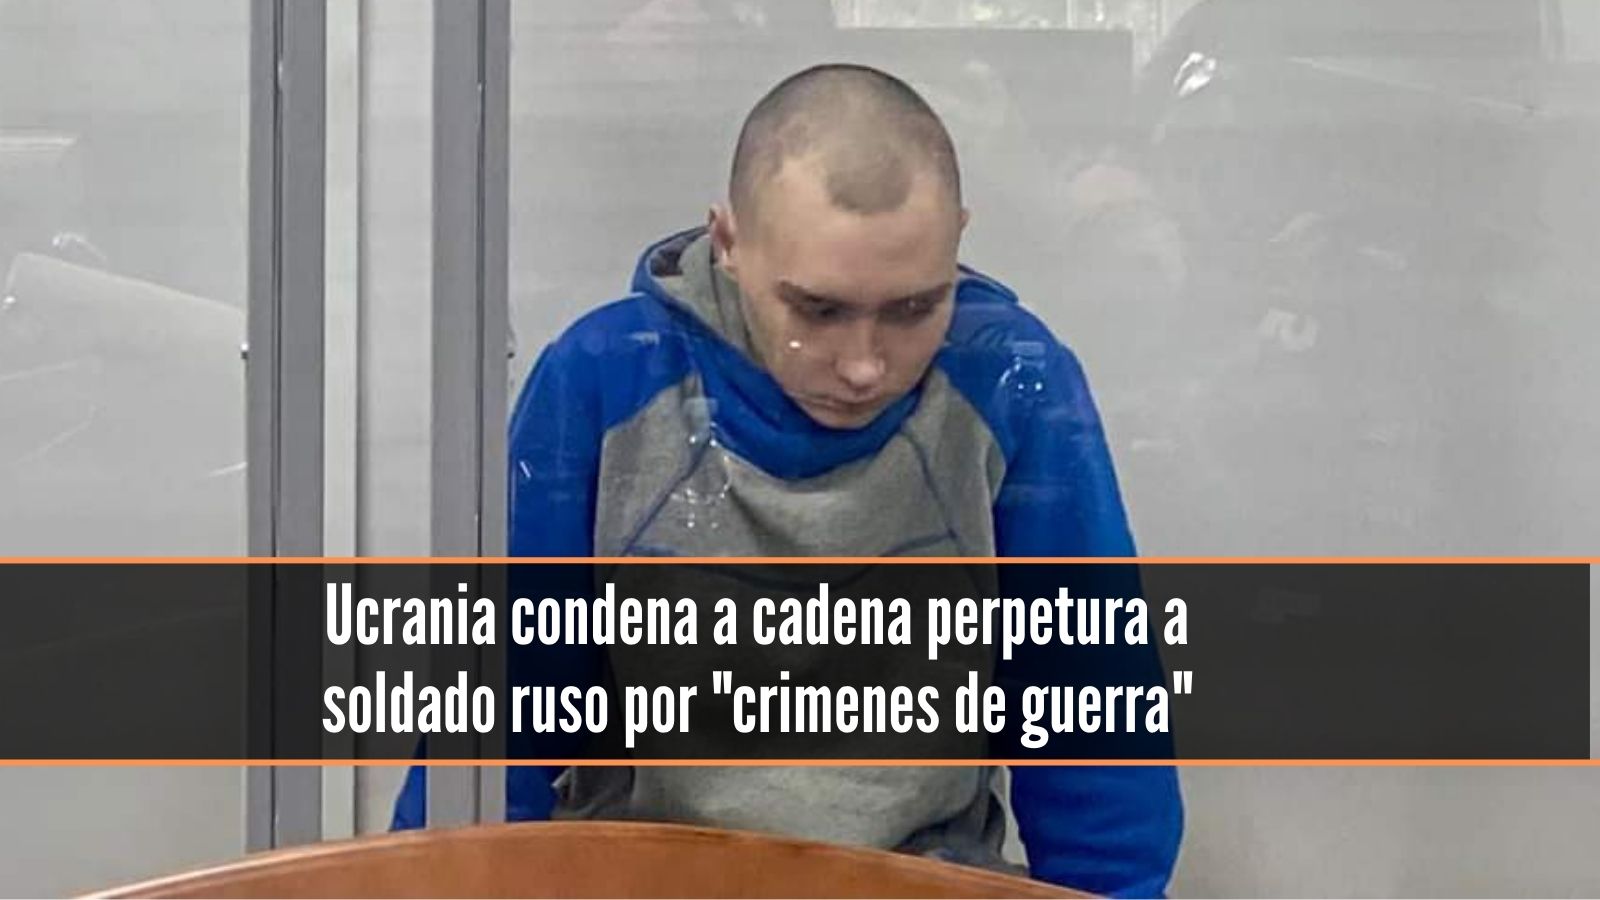 Soldado ruso condenado a cadena perpetua